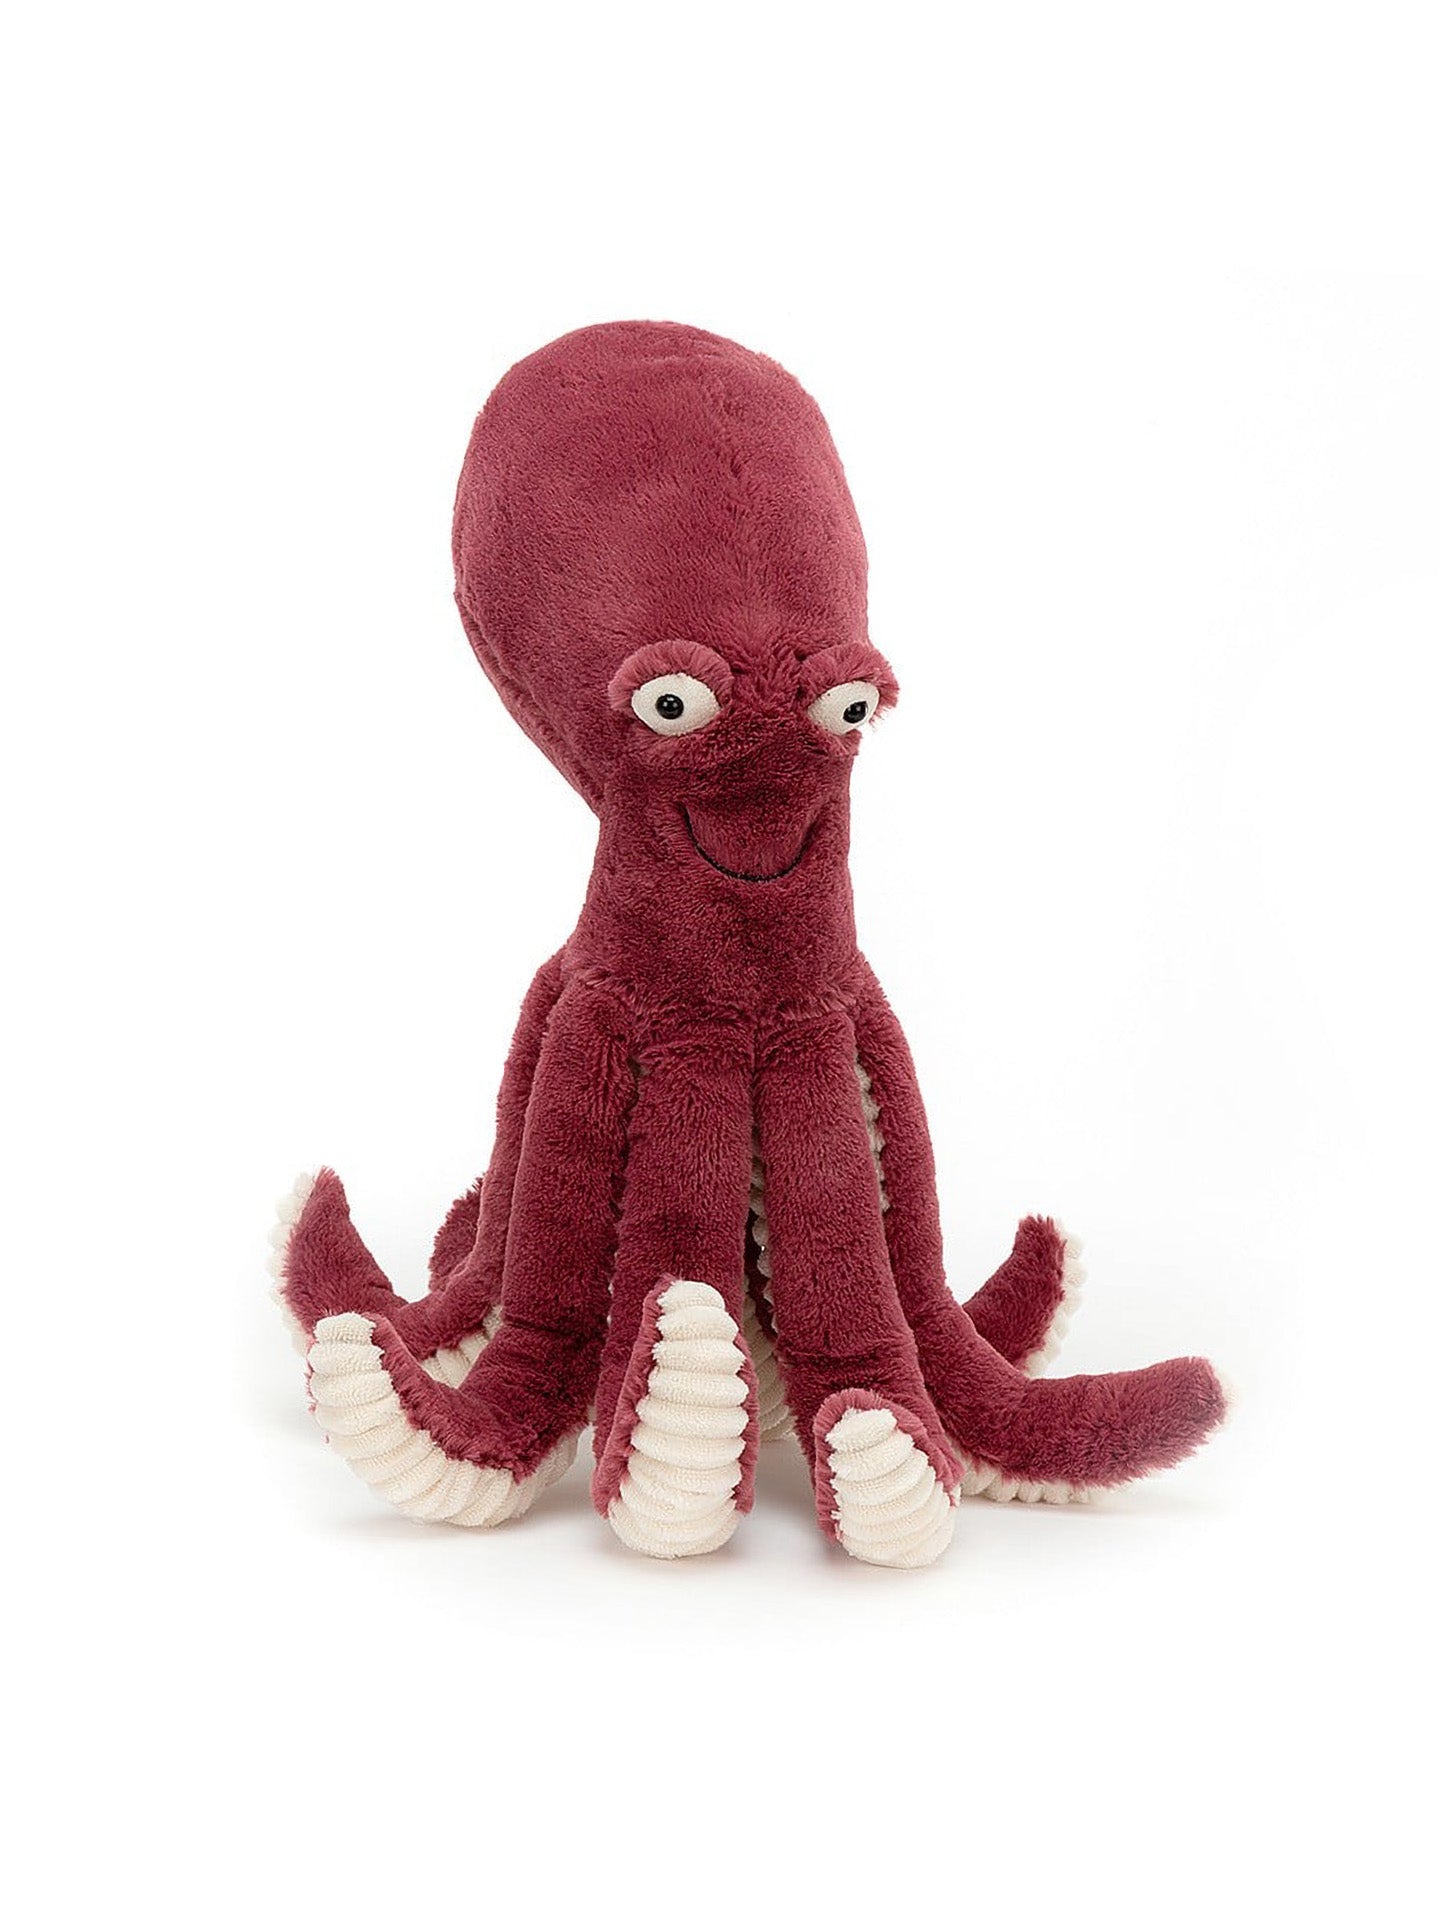 Obbie Octopus, Medium